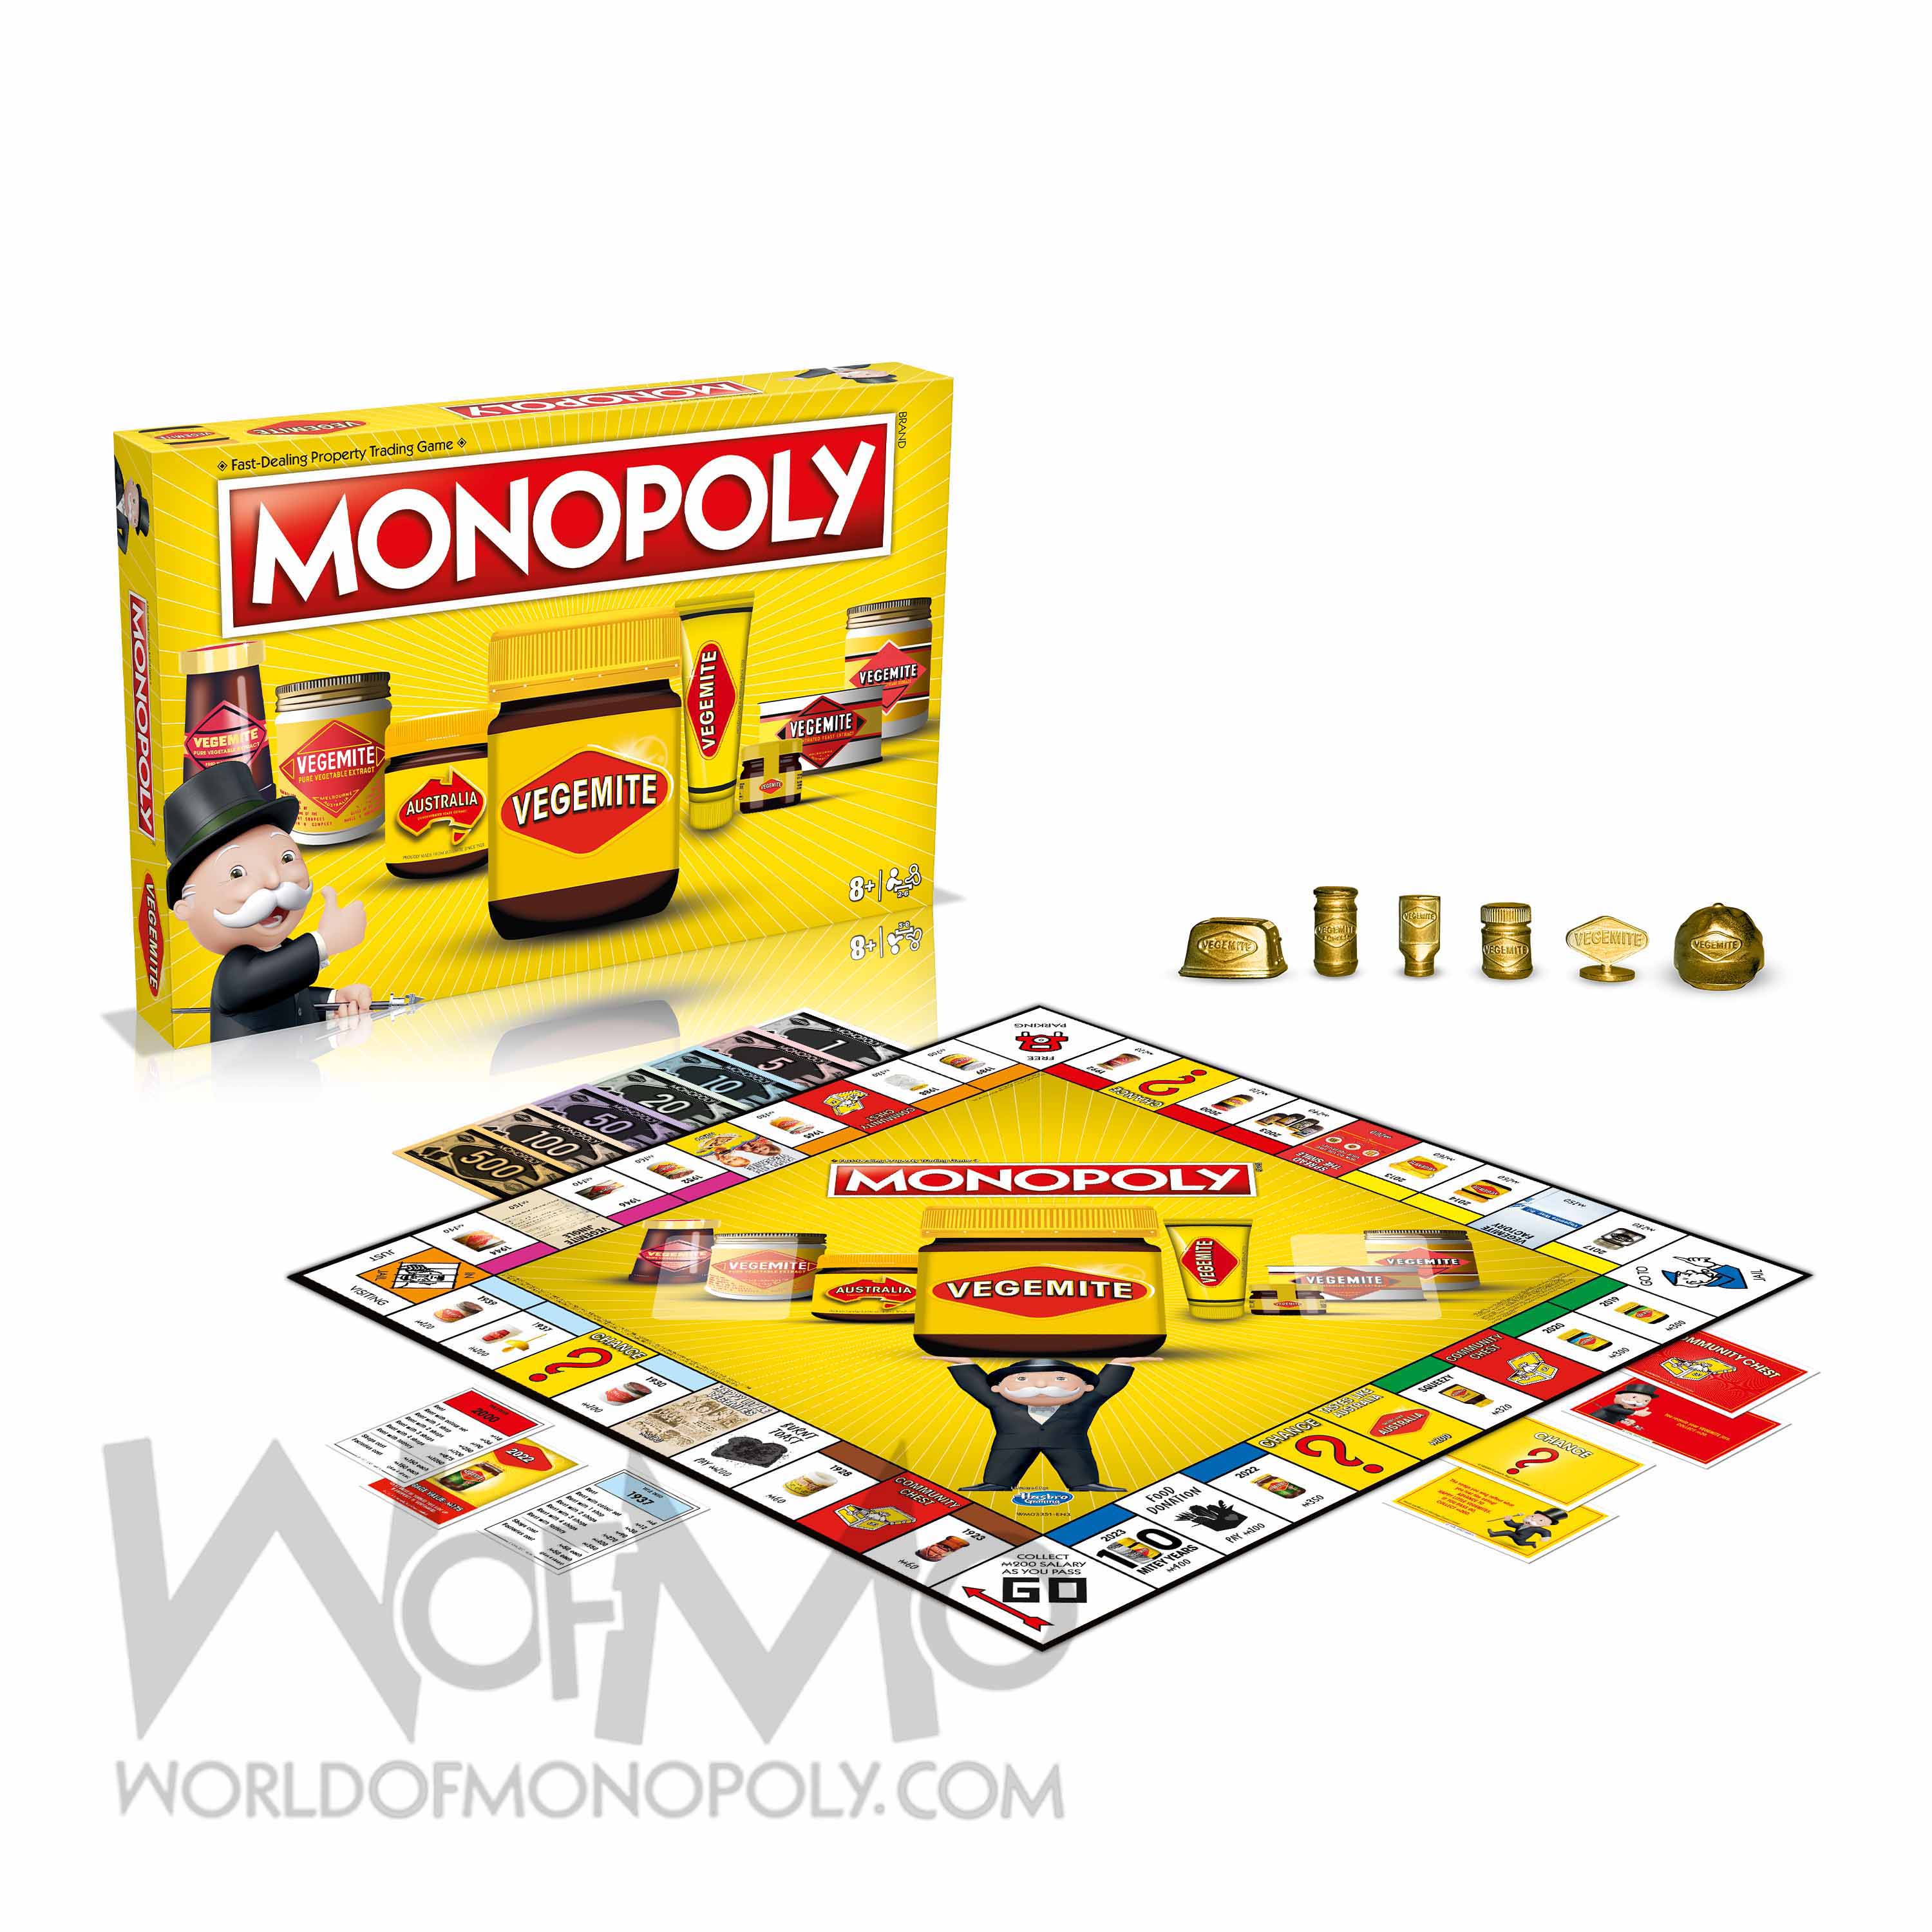 World of Monopoly.com